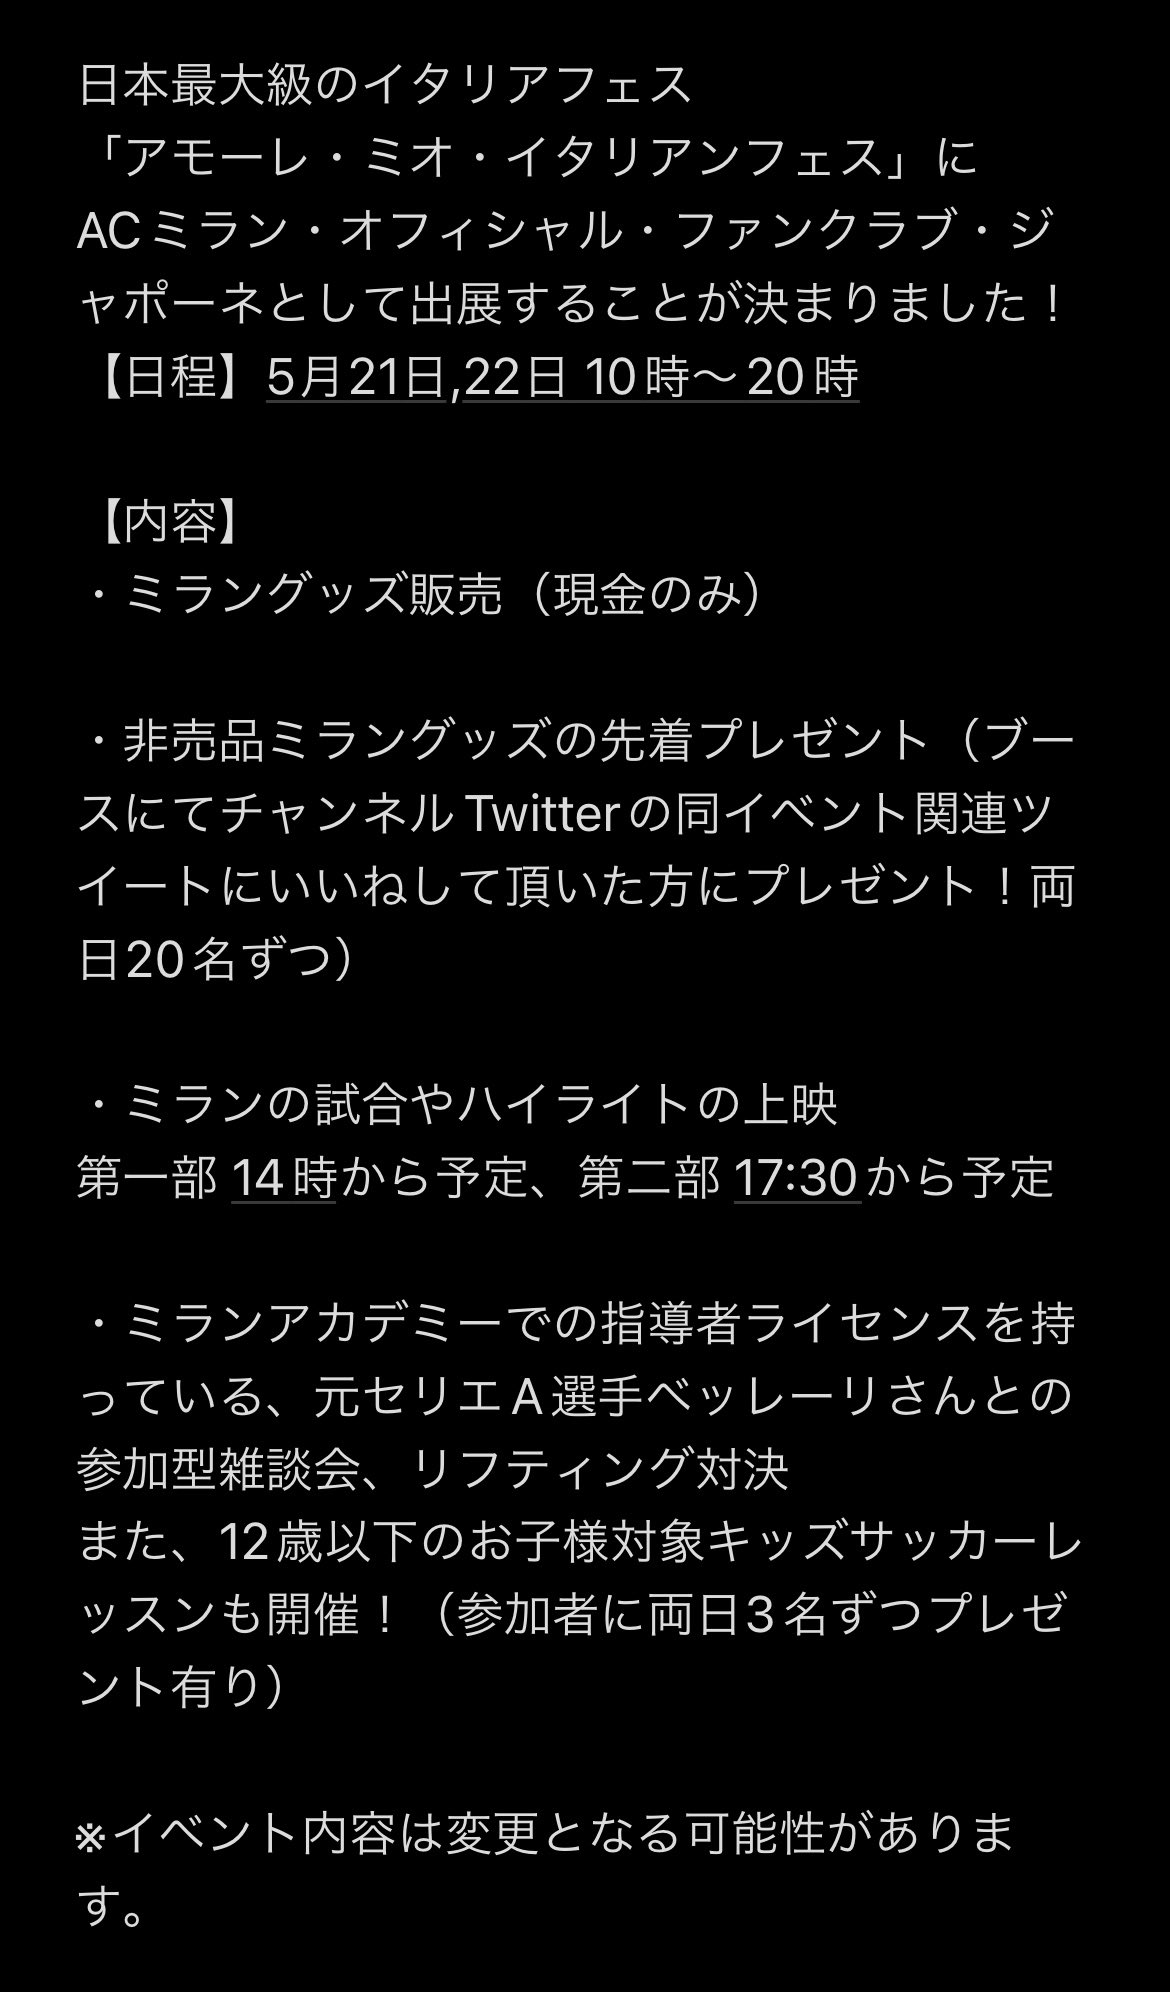 日出ずる国のミラニスタ Acmilan Official Fanclub Giappone Sheva0929 Twitter